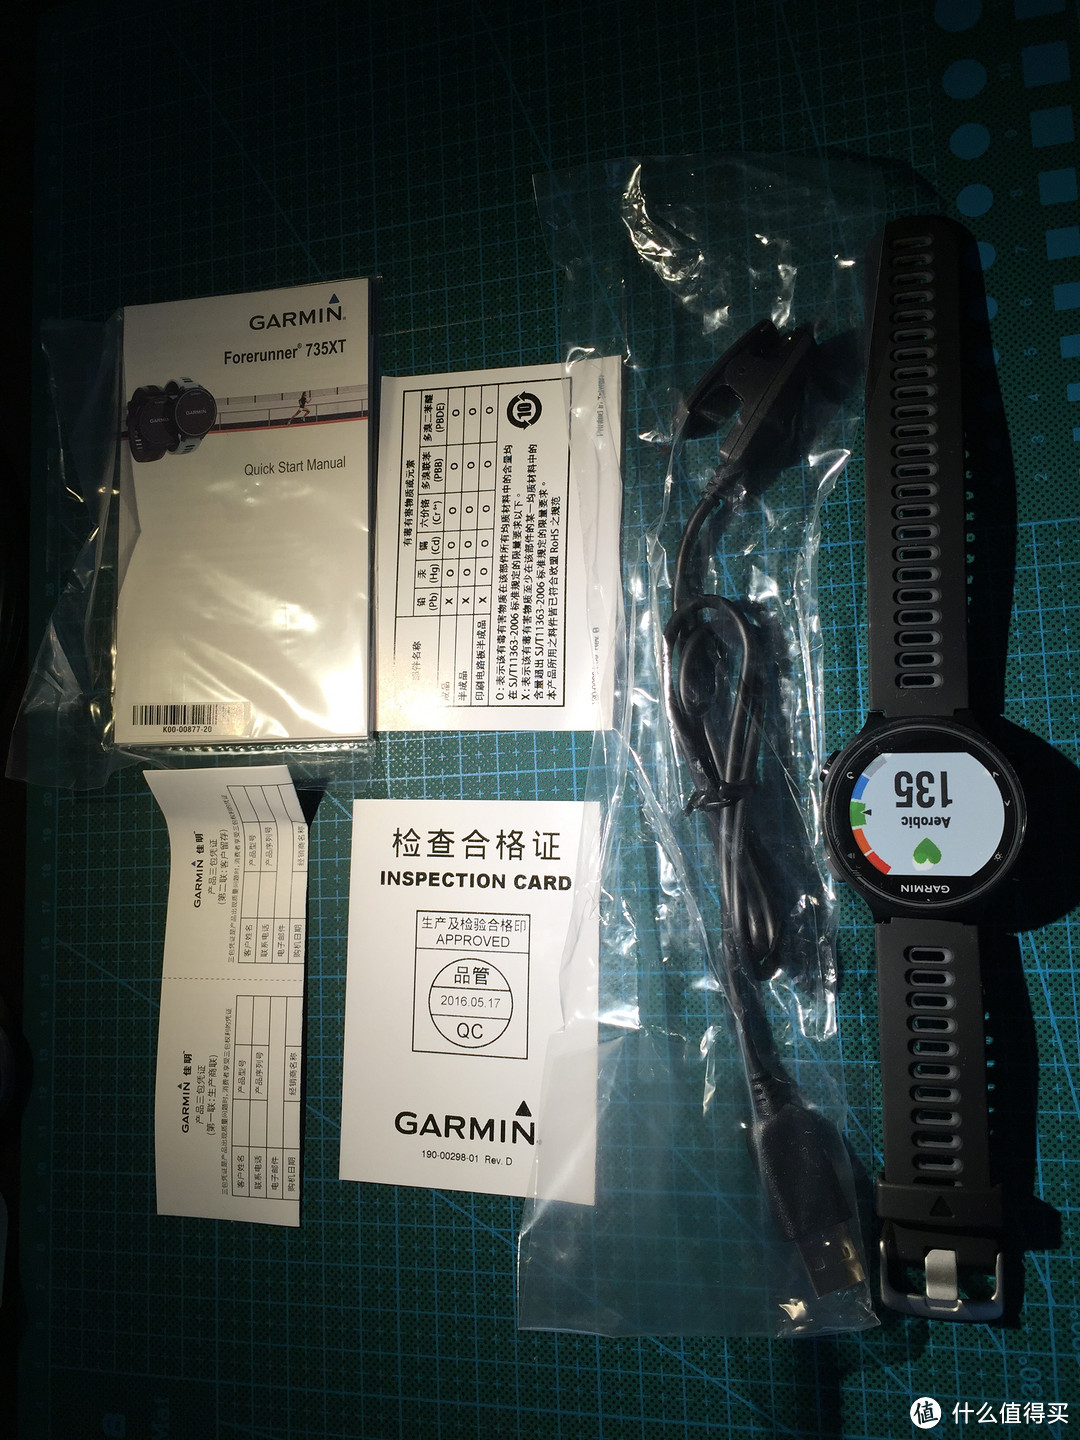 我也有一块GARMIN了：GARMIN 佳明 Forerunner 735XT 铁三智能手表 晒单